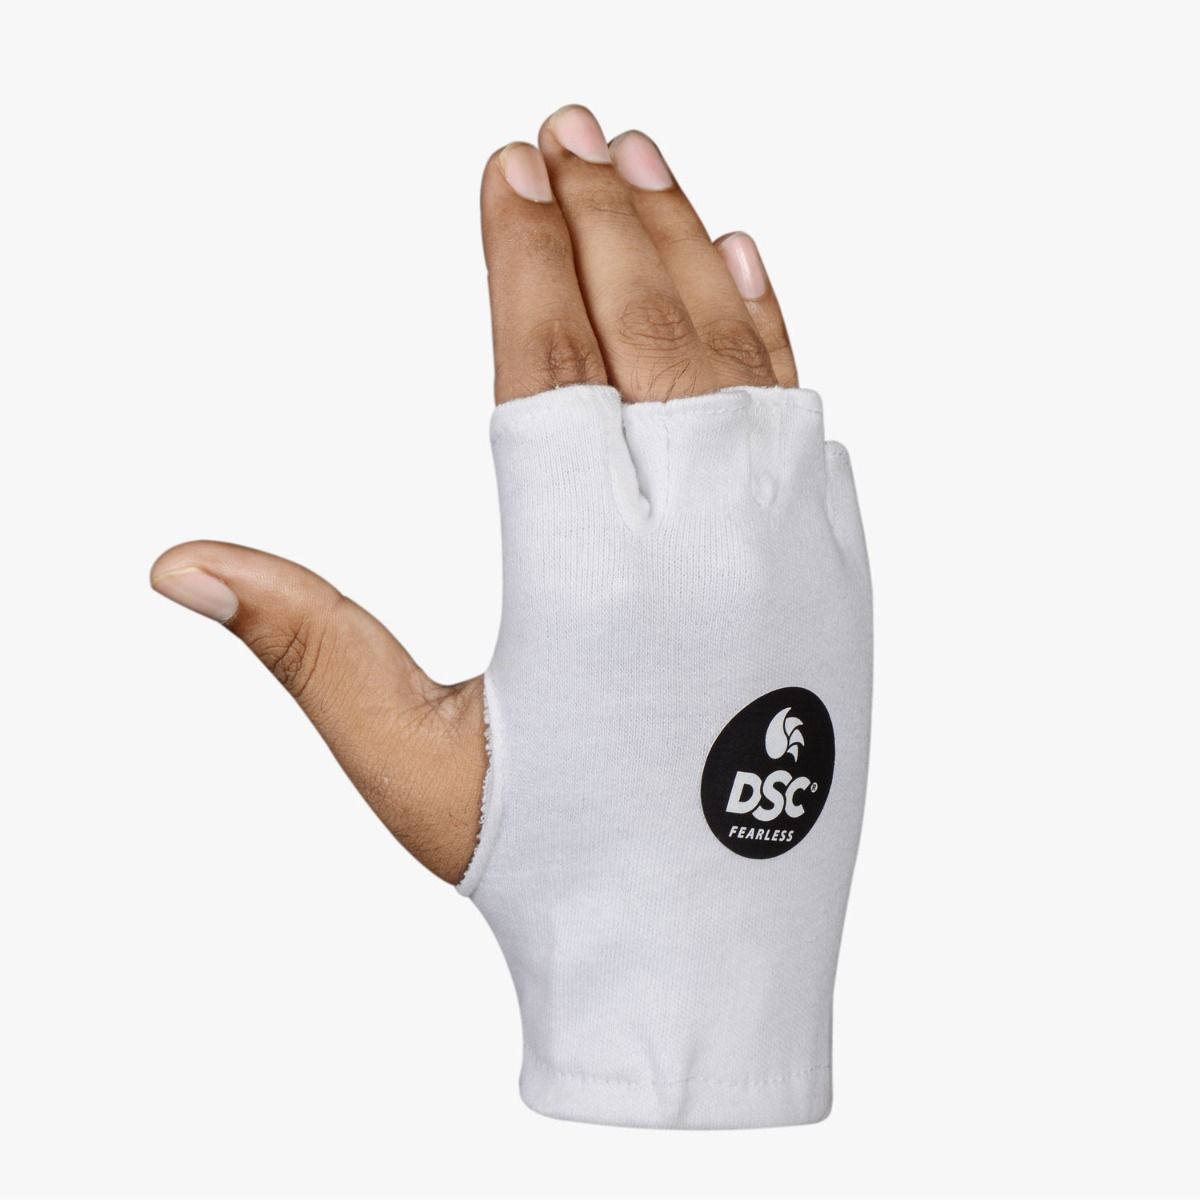 DSC Attitude Inner Batting Gloves